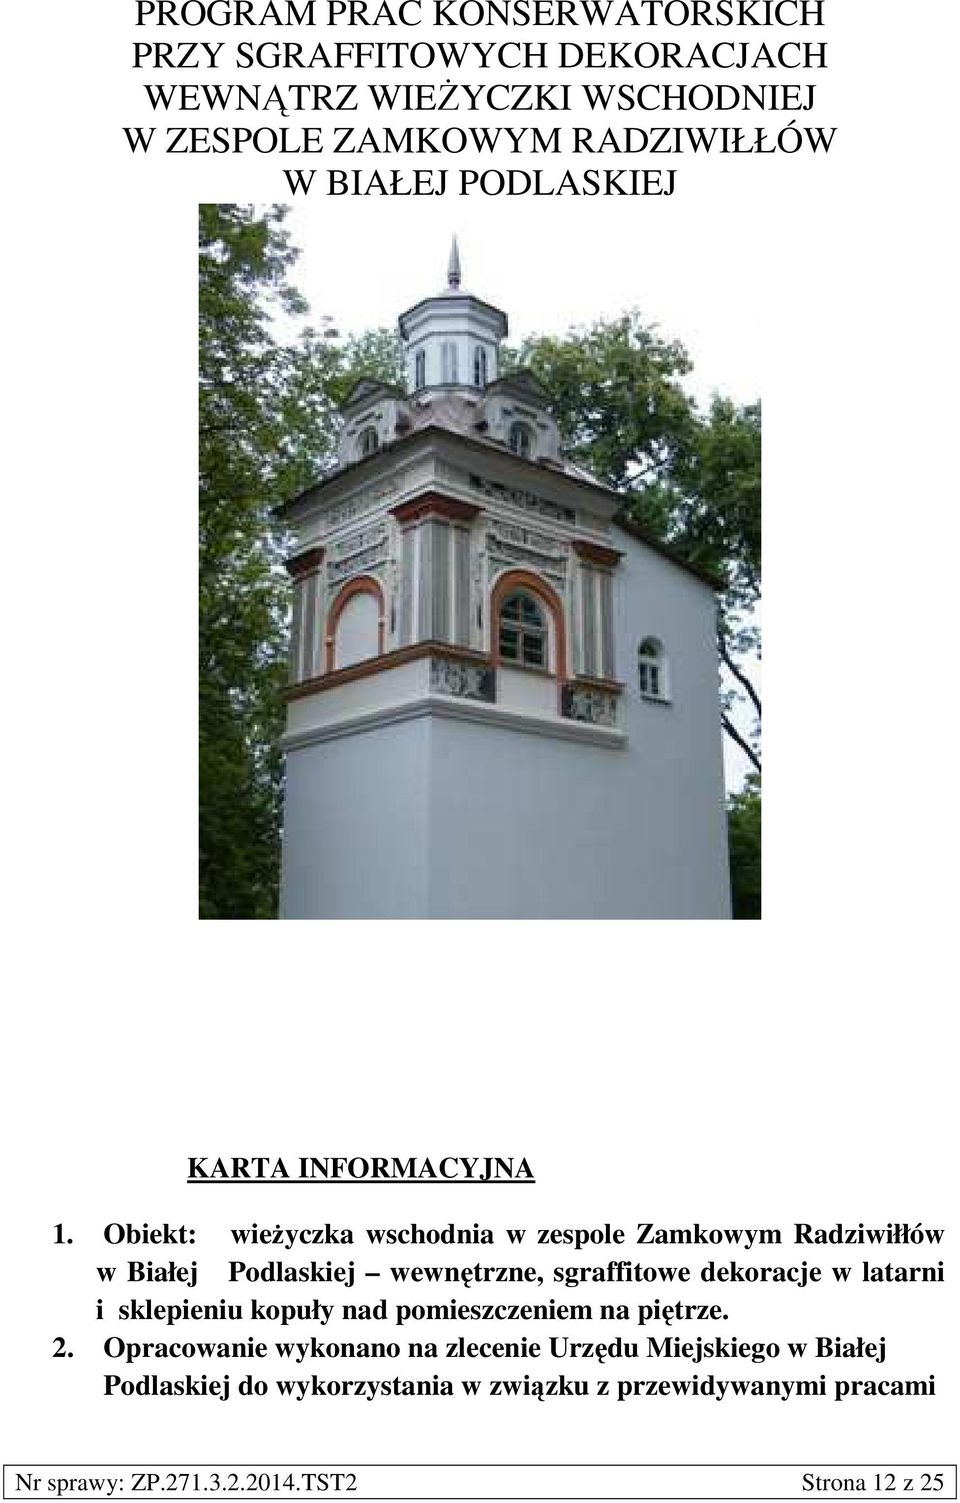 Obiekt: wieżyczka wschodnia w zespole Zamkowym Radziwiłłów w Białej Podlaskiej wewnętrzne, sgraffitowe dekoracje w latarni i